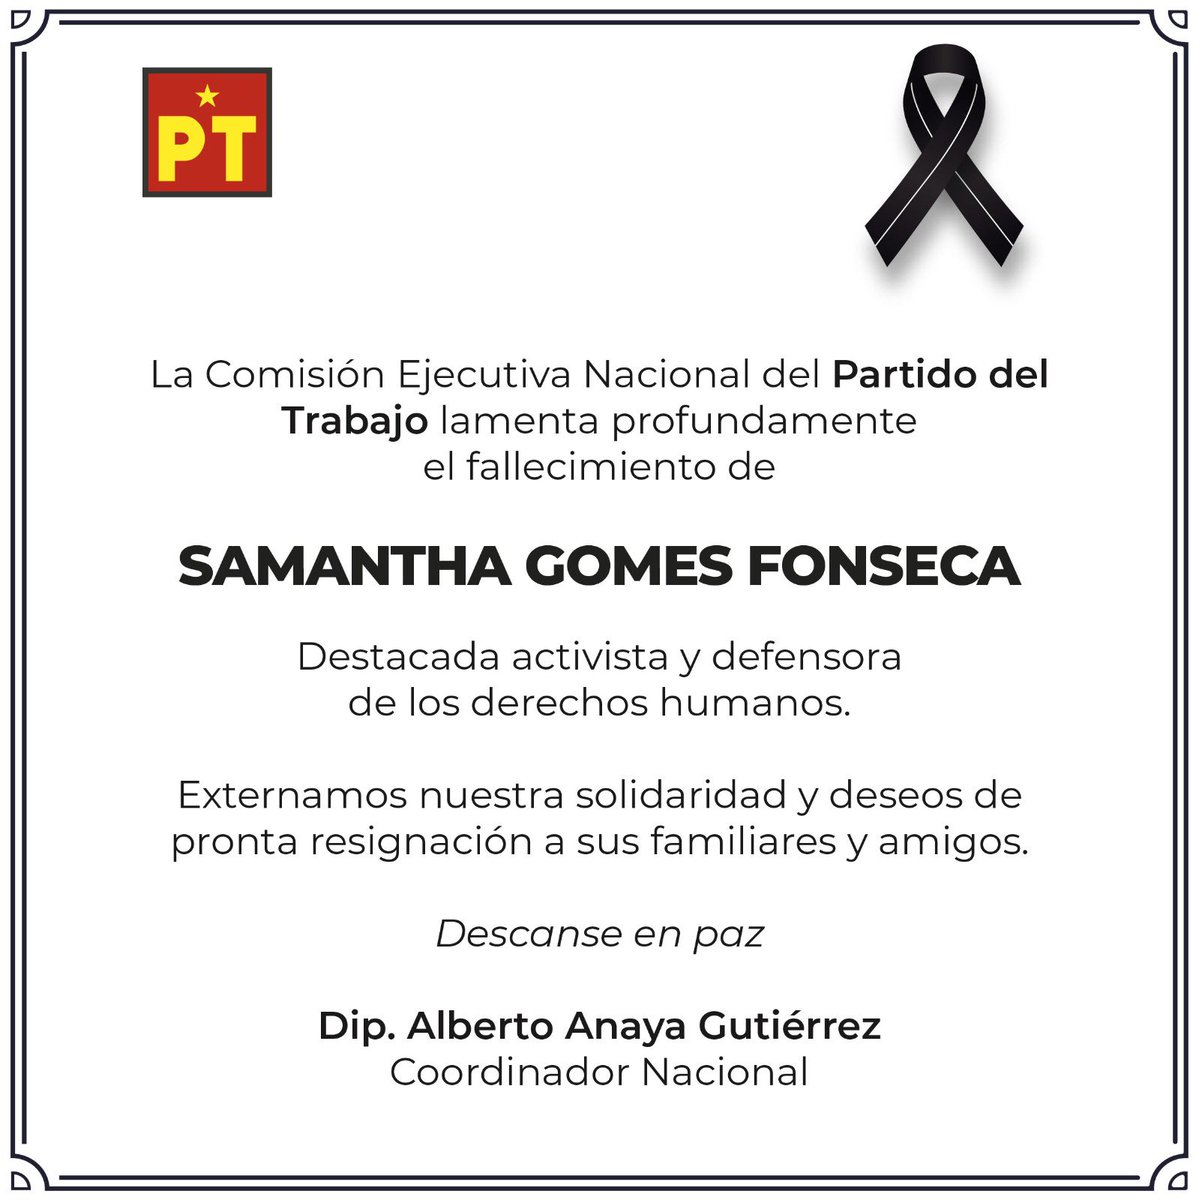 Mis sentidas condolencias por el lamentable fallecimiento de la compañera Samantha Gomes Fonseca. Me sumo a las exigencias de justicia, confiando en que las autoridades esclarezcan este terrible asesinato.